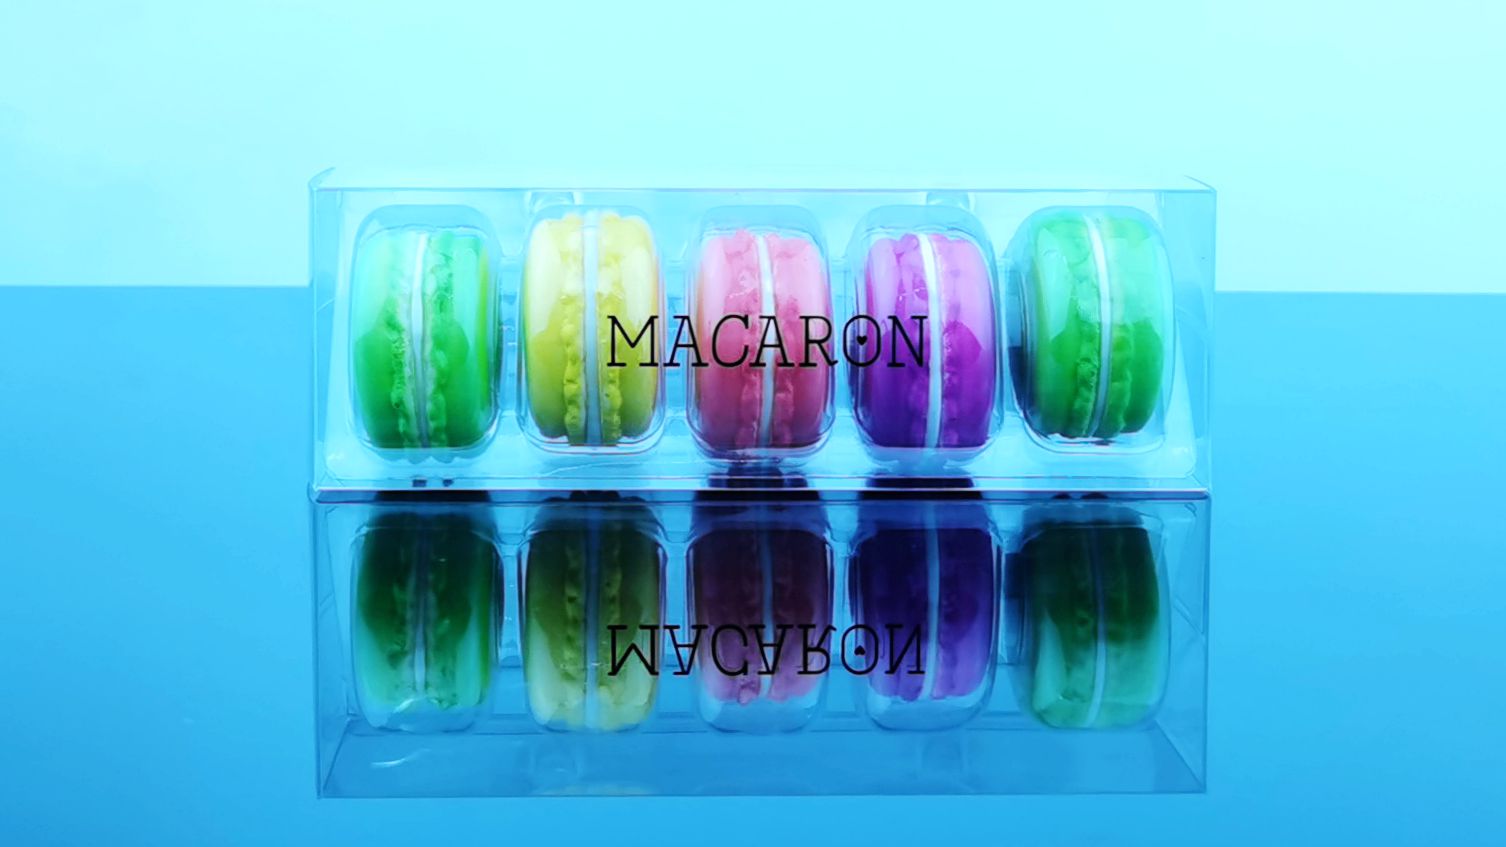 Macaron transparent packaging box